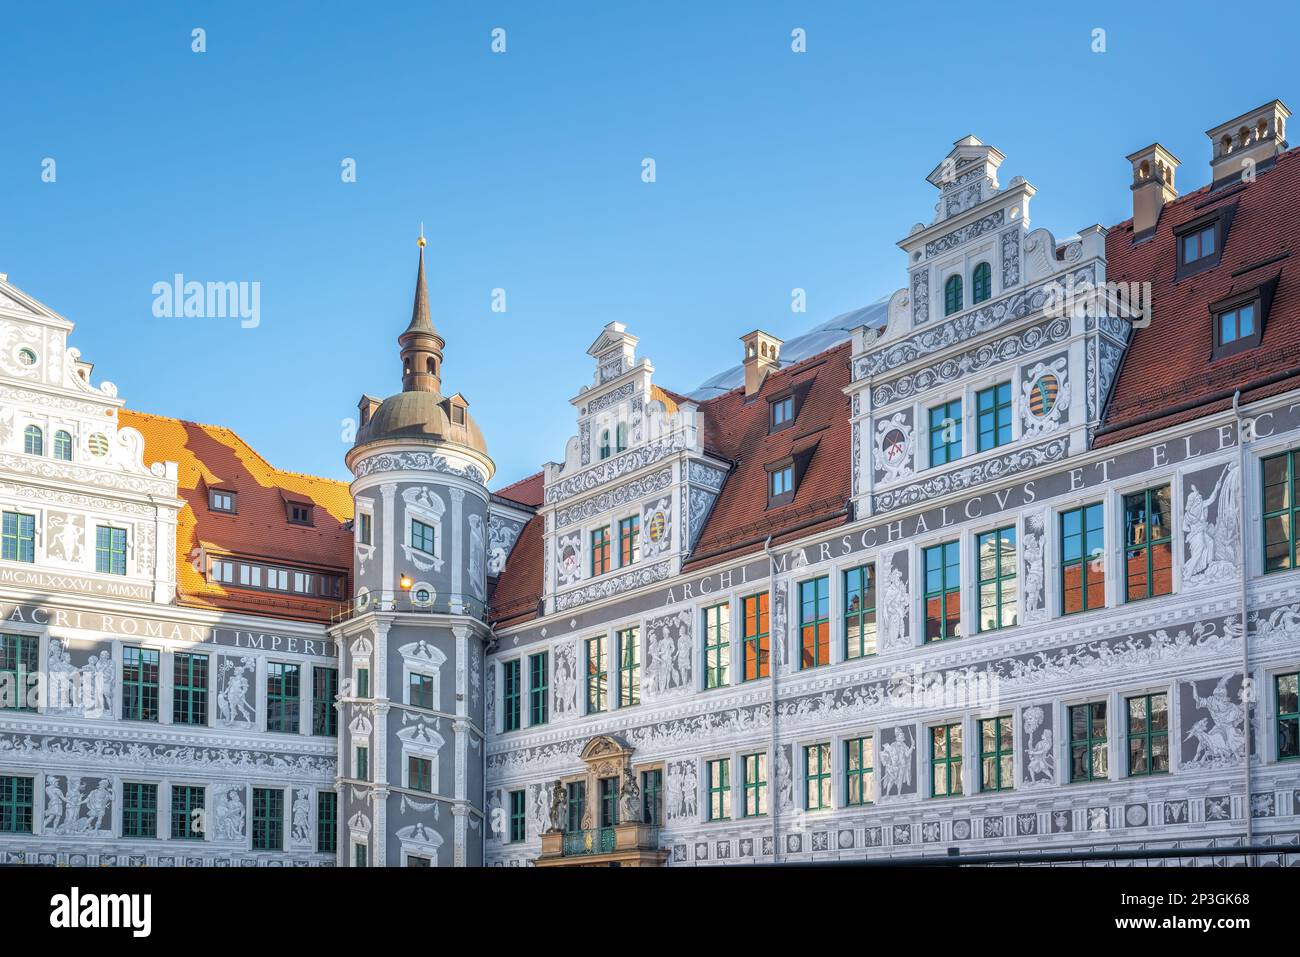 Großer Innenhof des Dresdner Schlosses (Residenzschloss) - Dresden, Sachsen, Deutschland Stockfoto